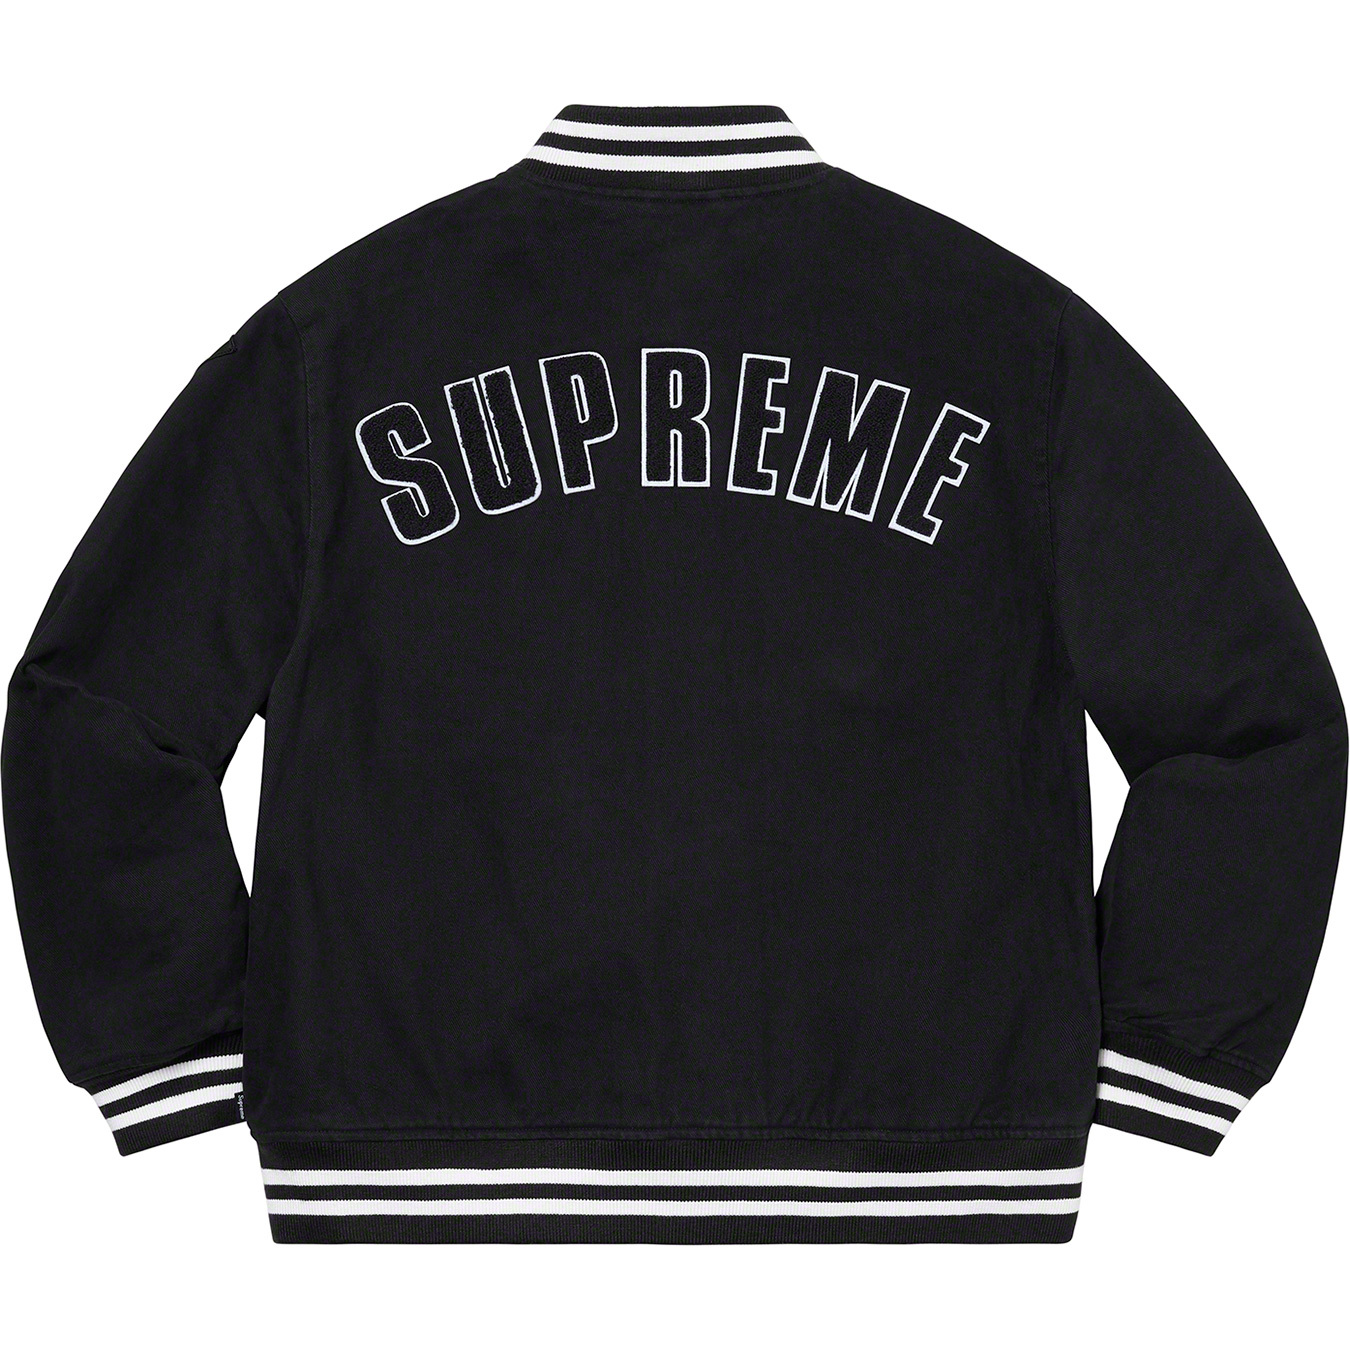 Supreme®/New Era®/MLB Varsity Jacket - Supreme Community